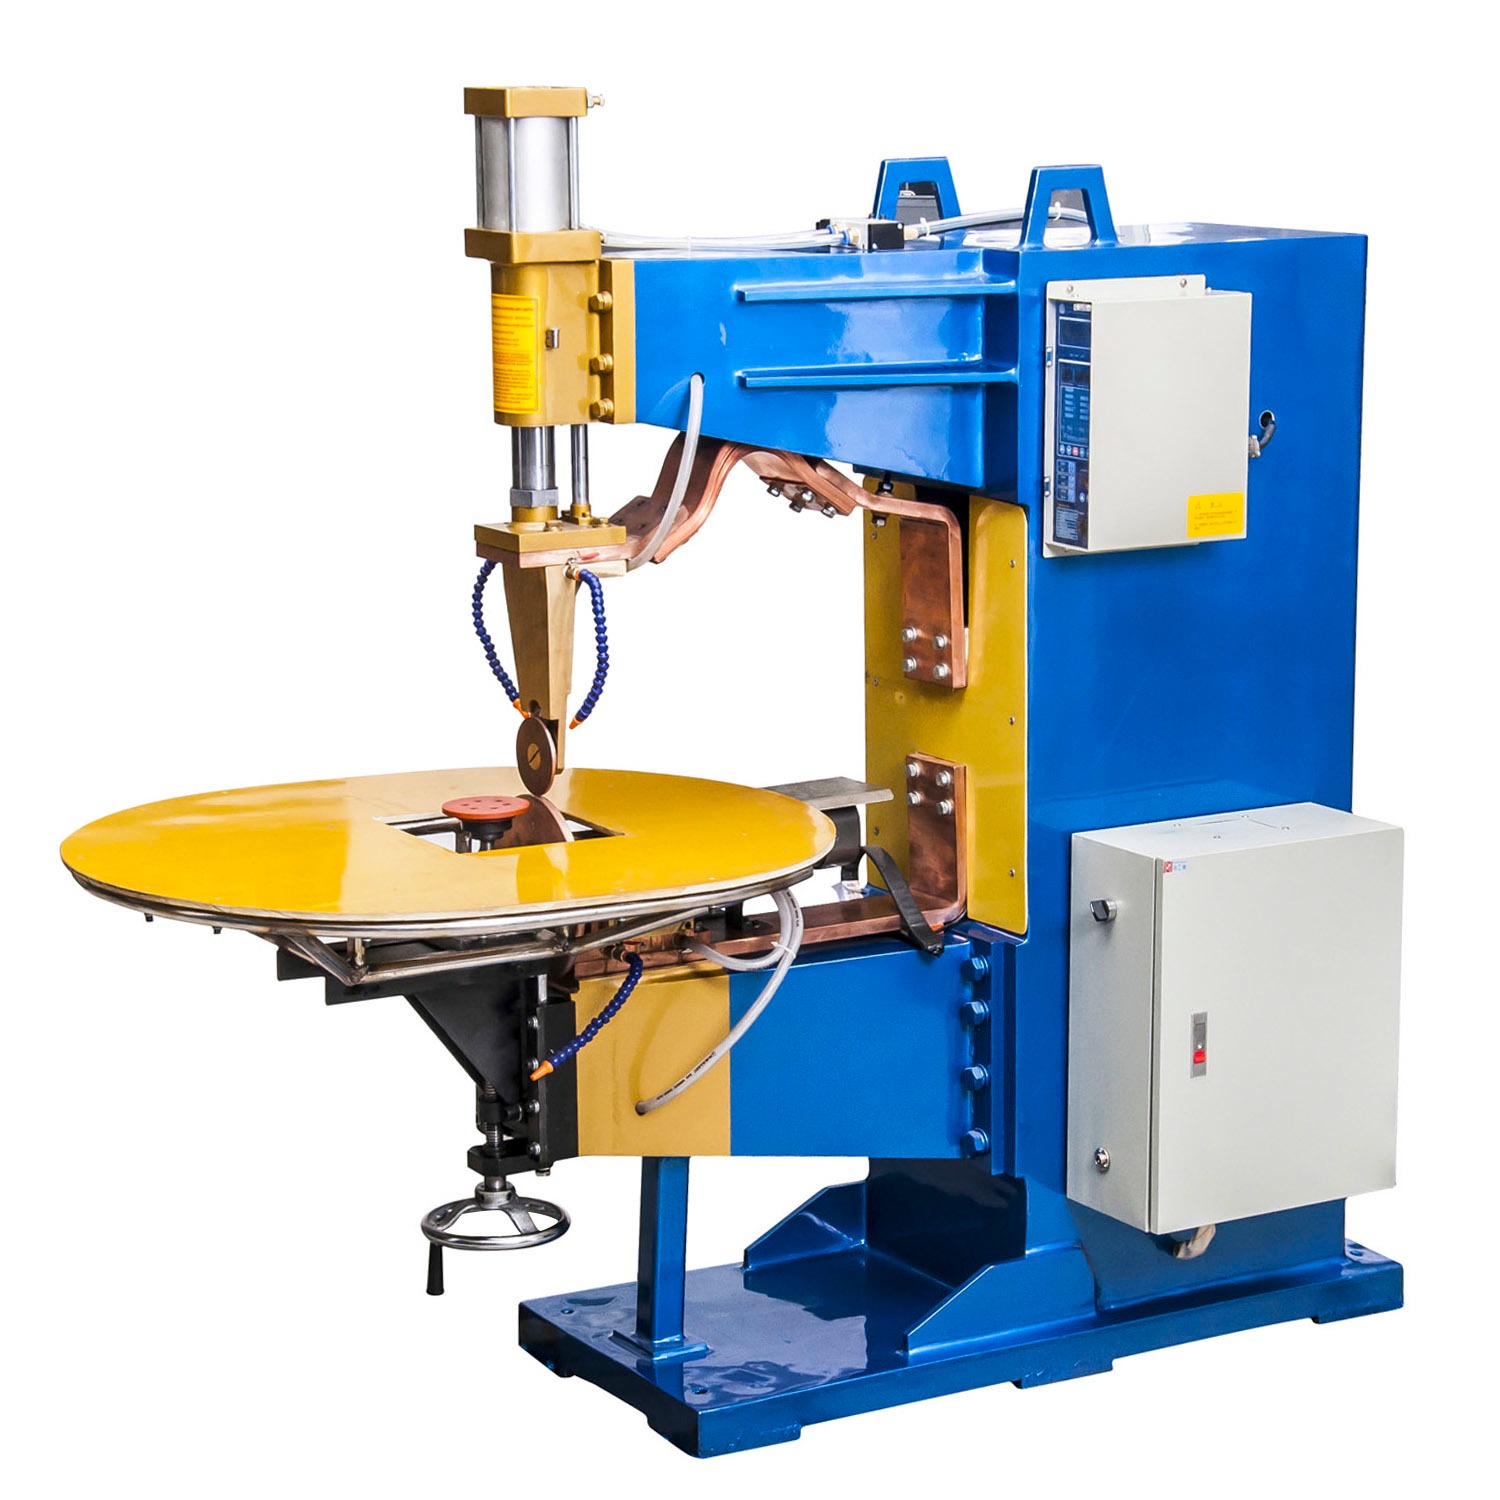 气动交流滚焊机 型号TDN-50 包含两种基本的机型 横缝焊接和纵缝焊接